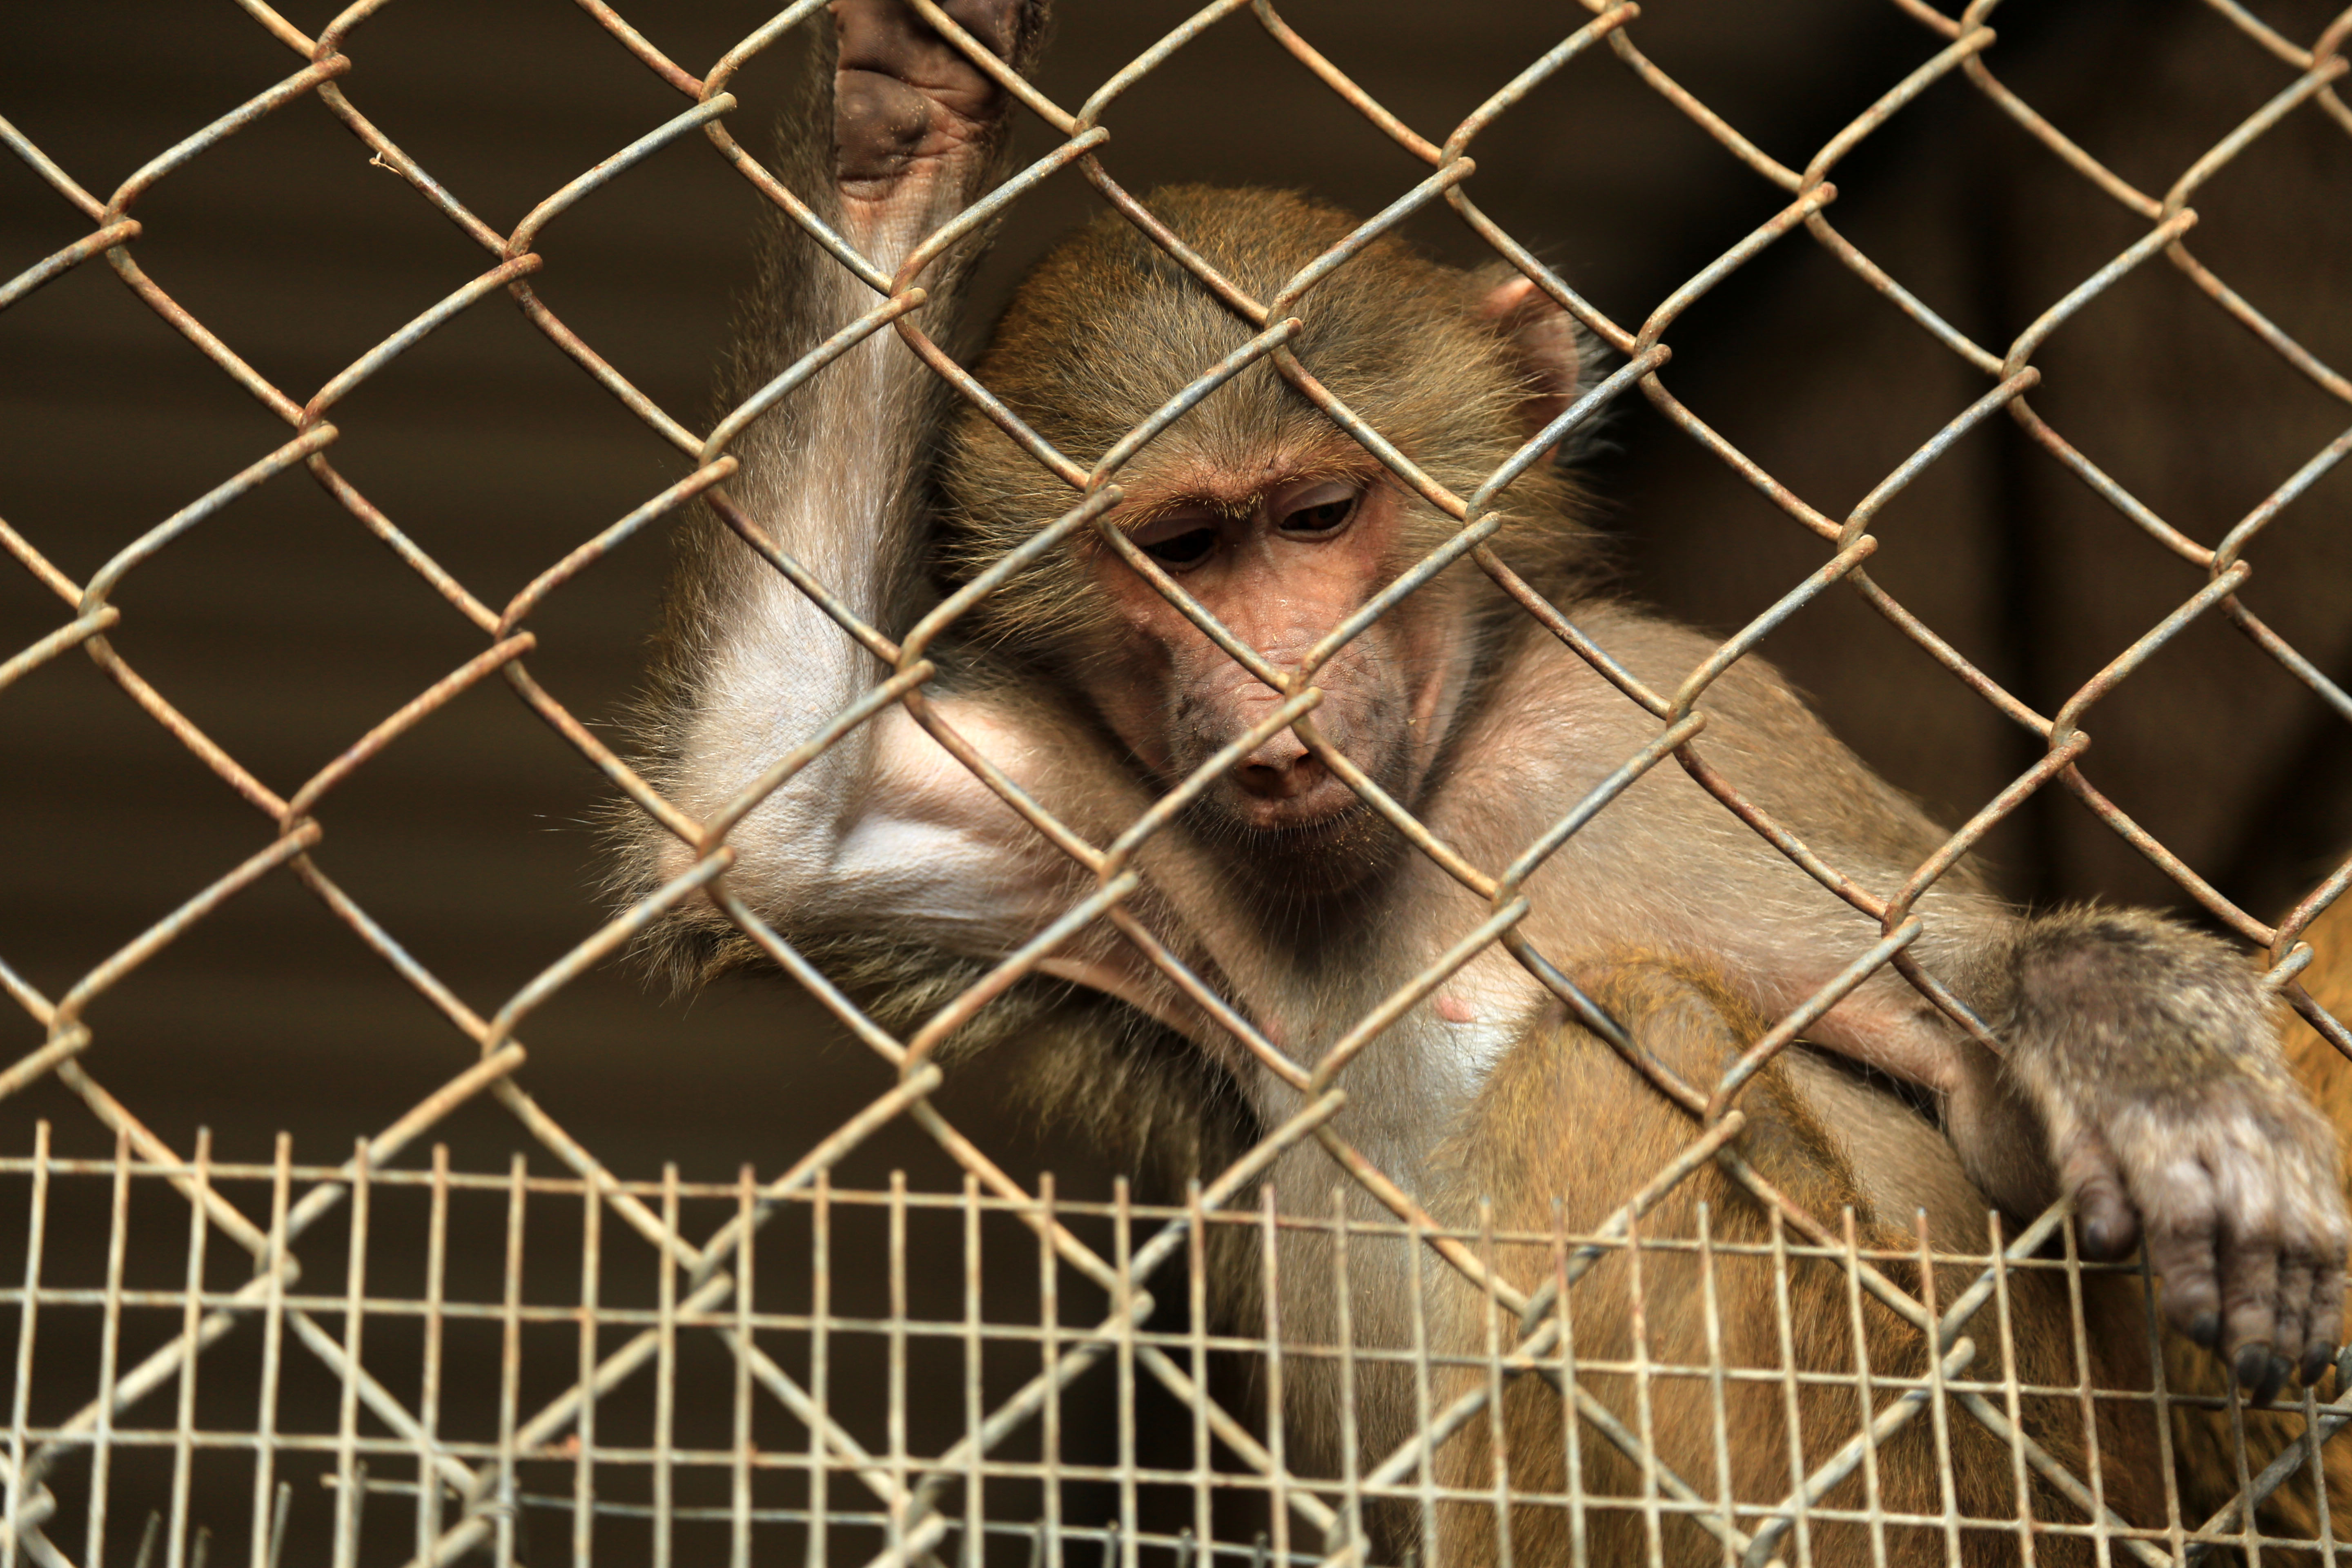 27 majmot öltek meg a NASA egyik telephelyén egyetlen nap alatt 2019-ben